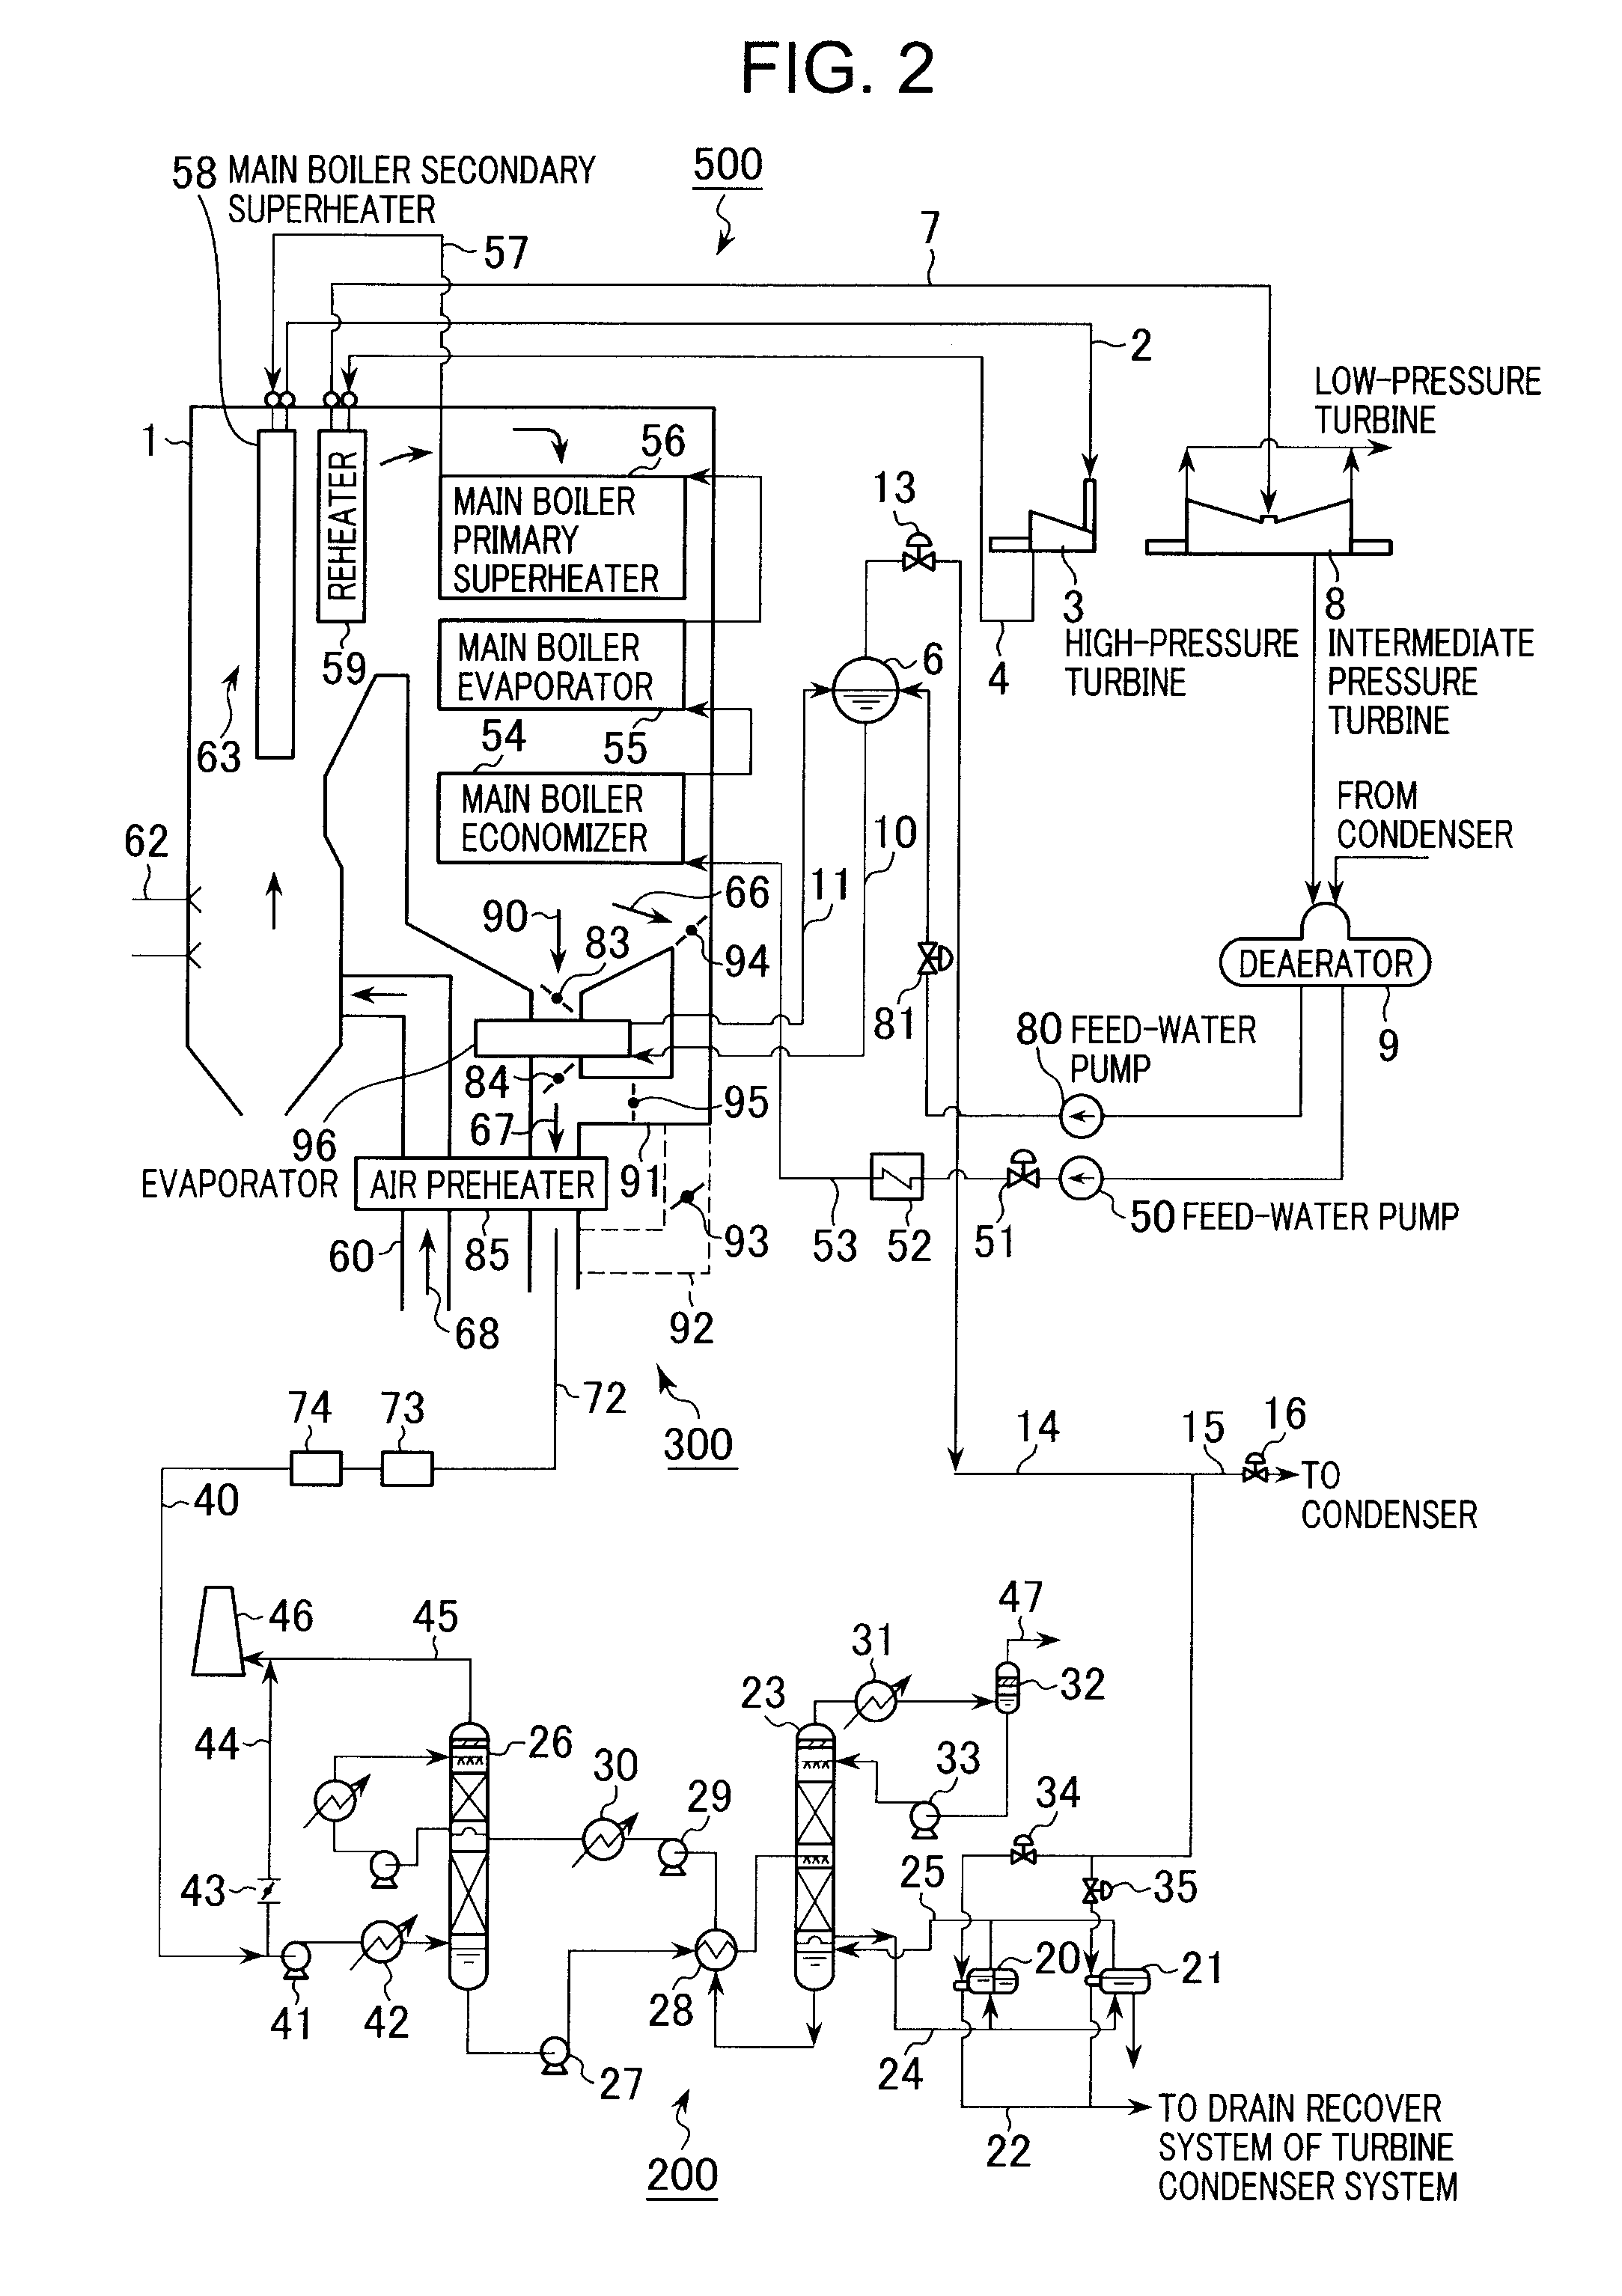 Boiler Apparatus